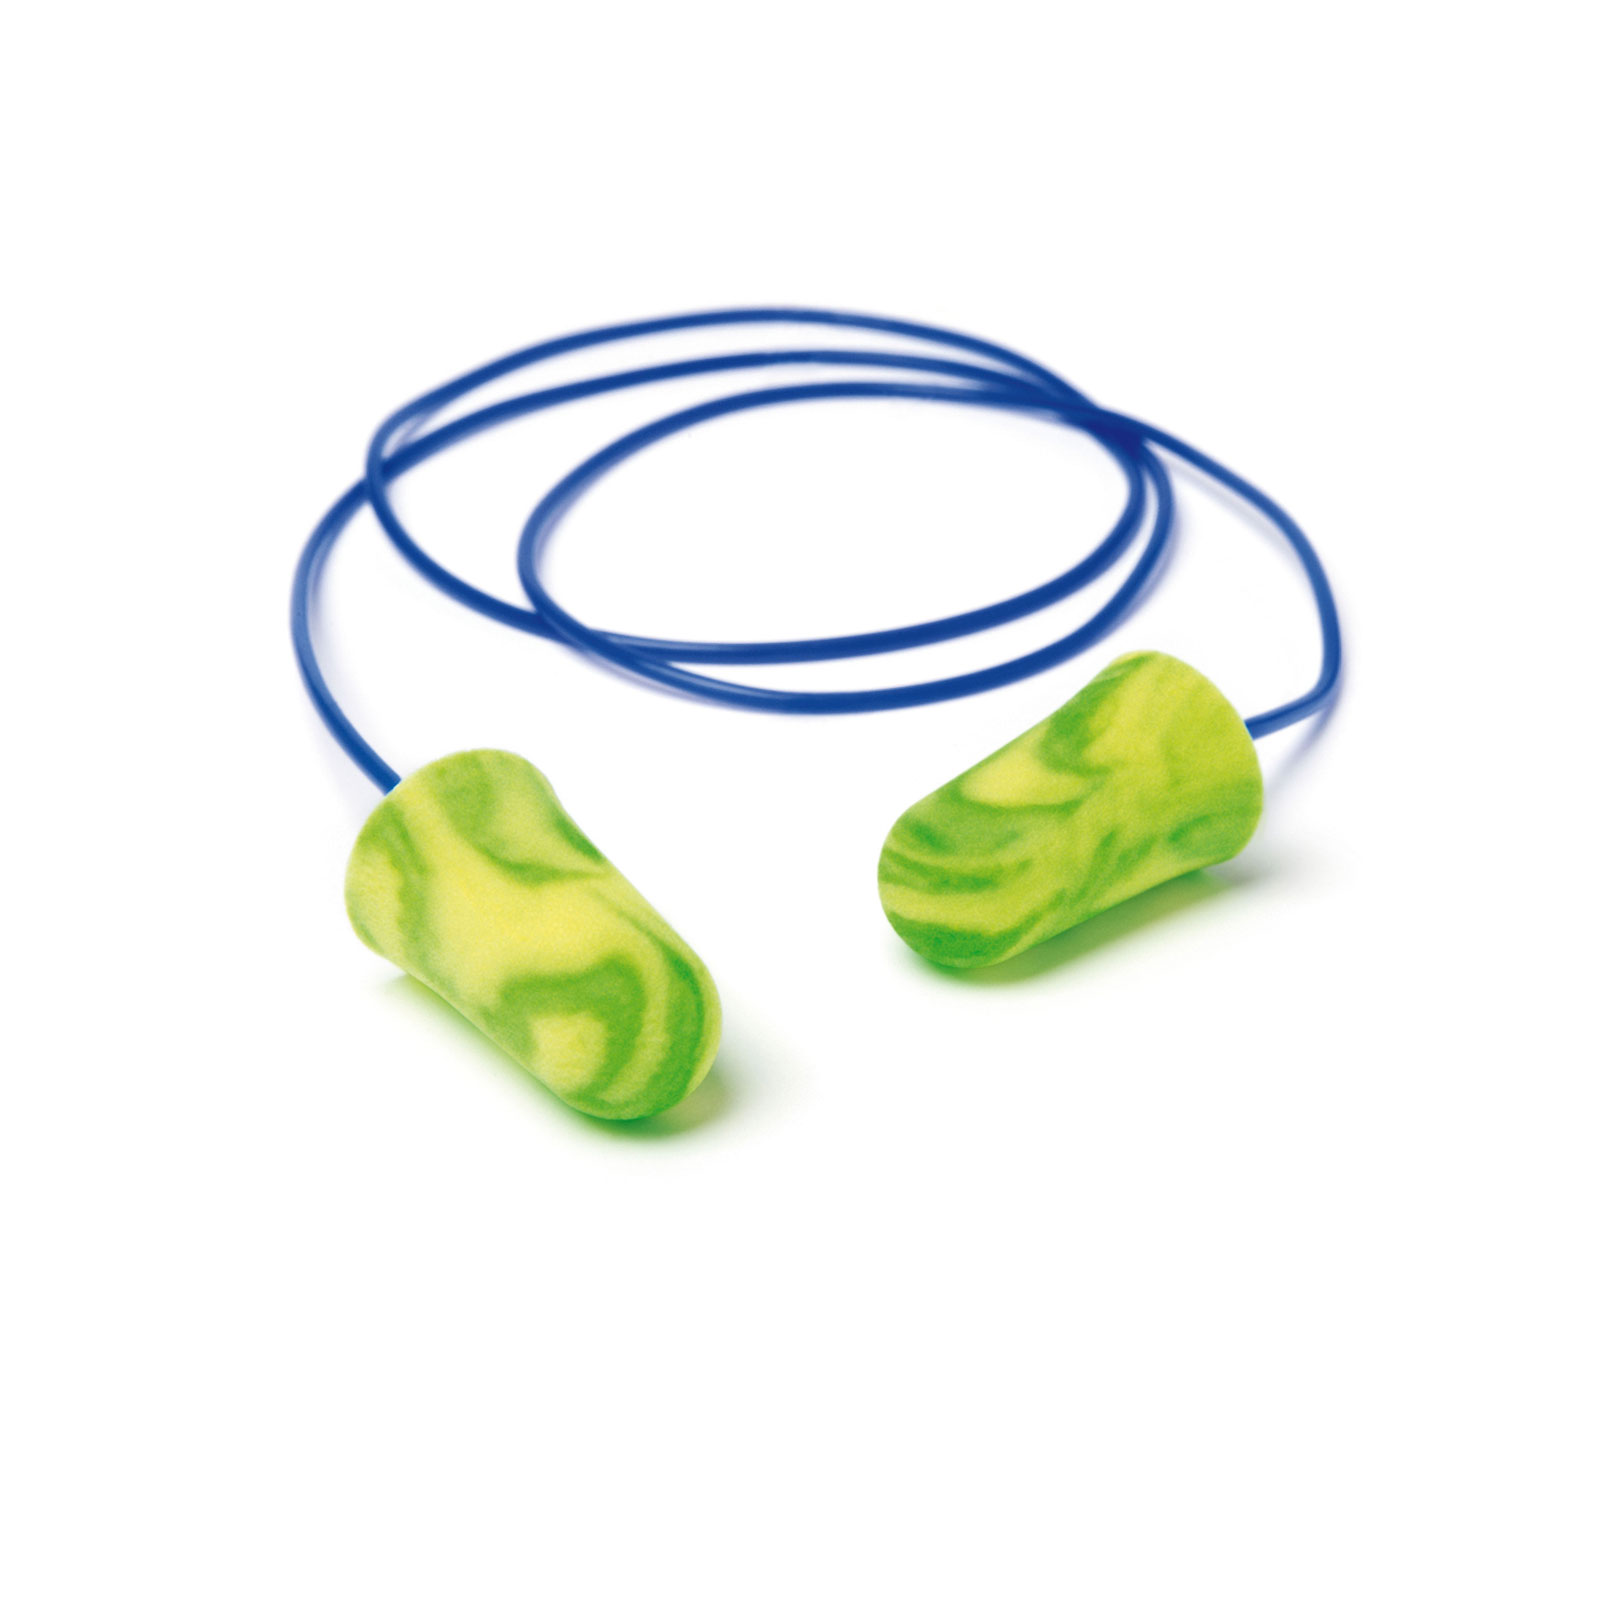 Tapones para los oídos Pura-Fit de Moldex: Protección cómoda para los oídos  - Moldex Europe